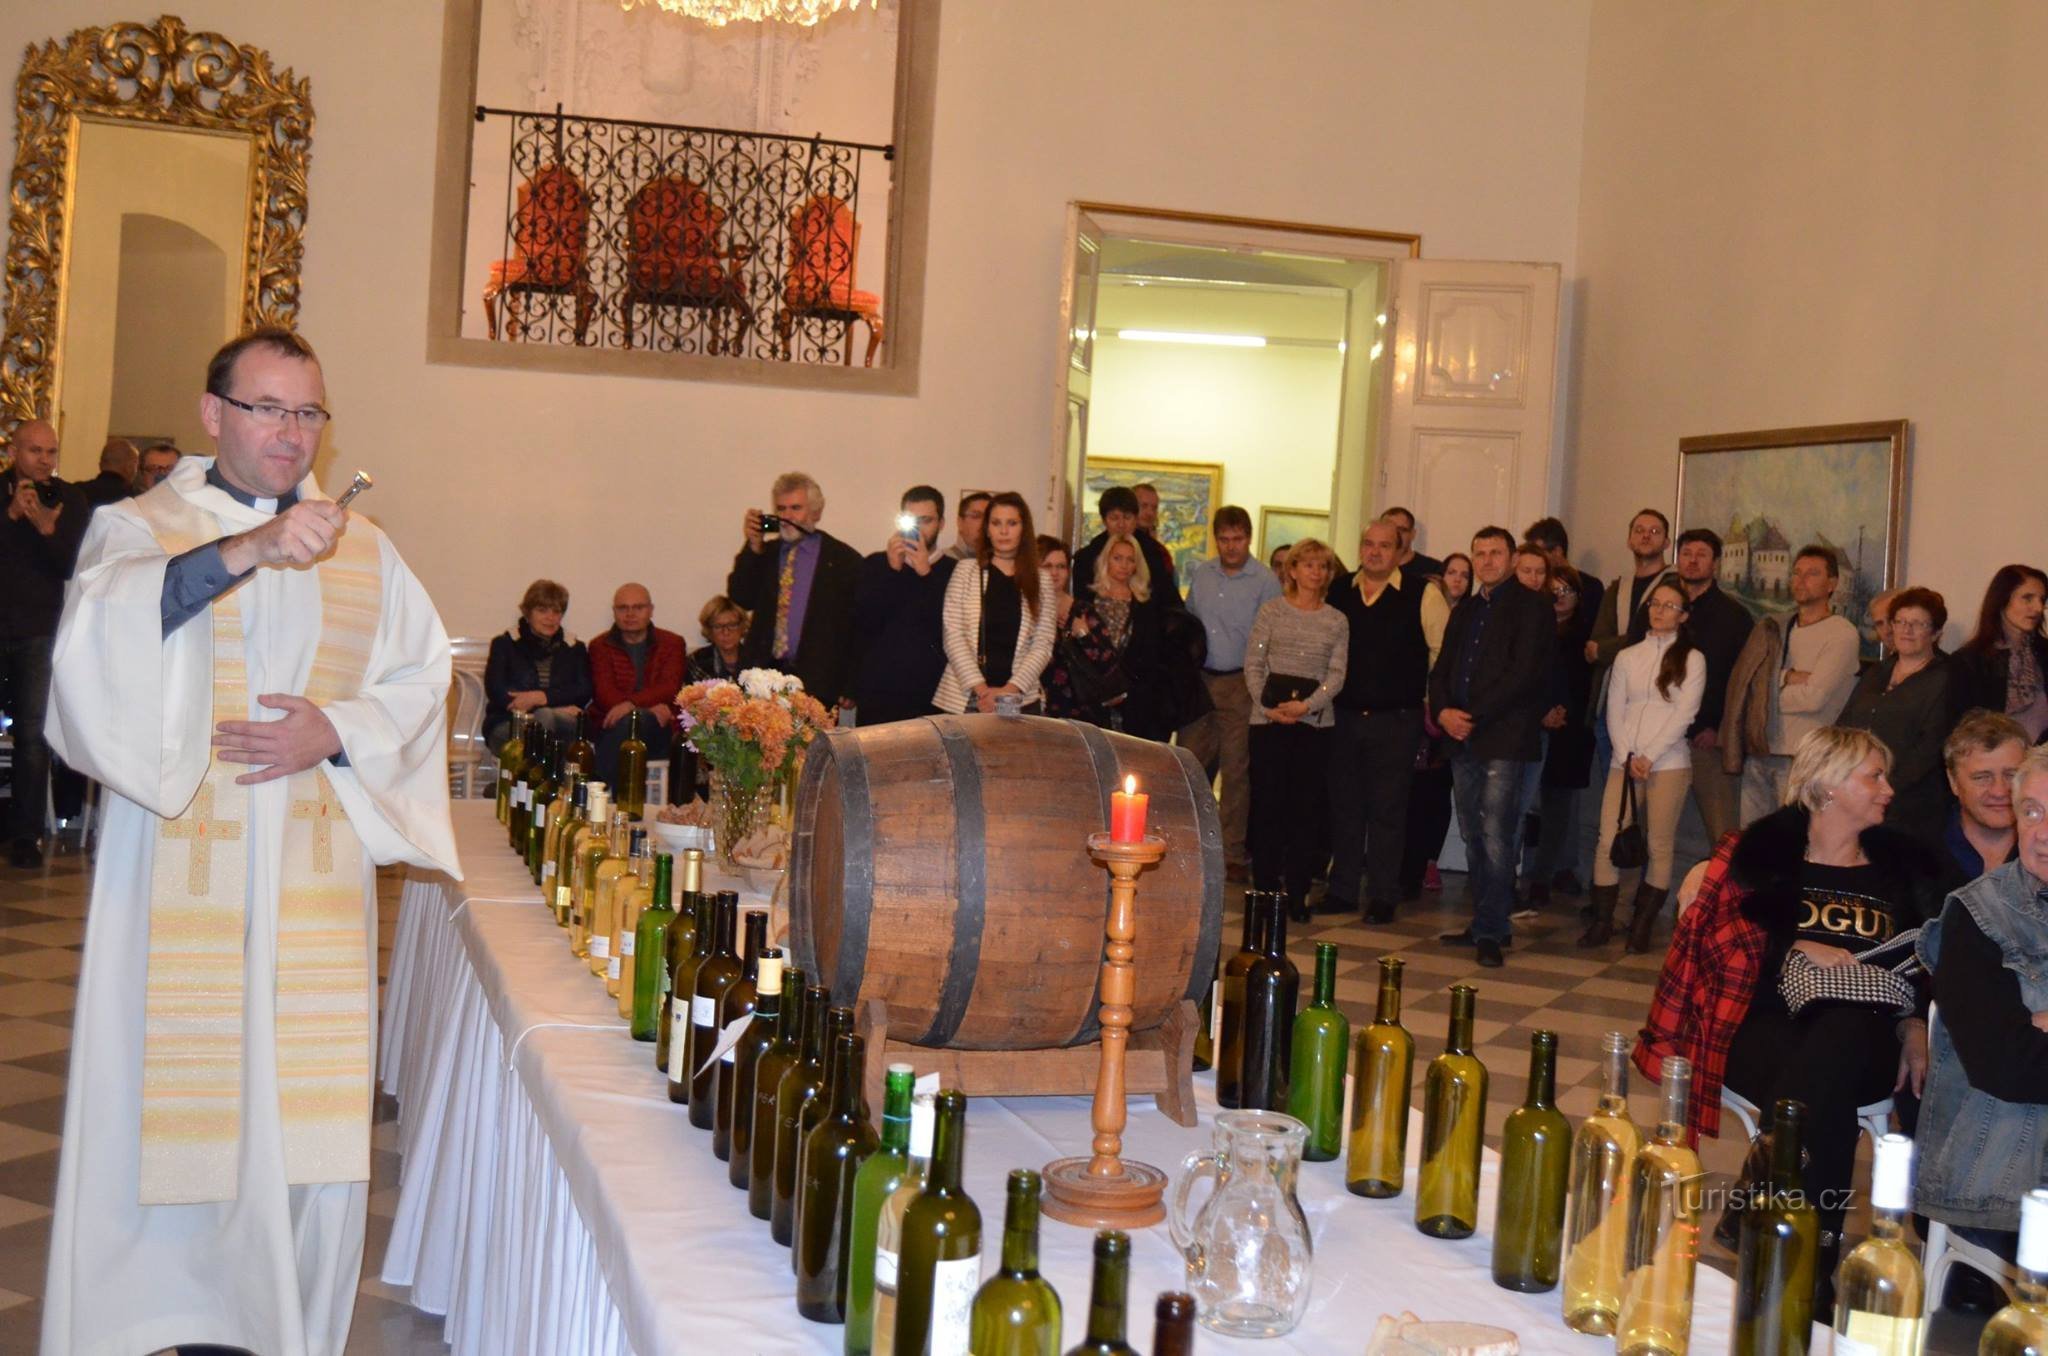 Svatomartinský Mikulov le invita a especialidades de ganso, vinos jóvenes y una gran porción de cultura.